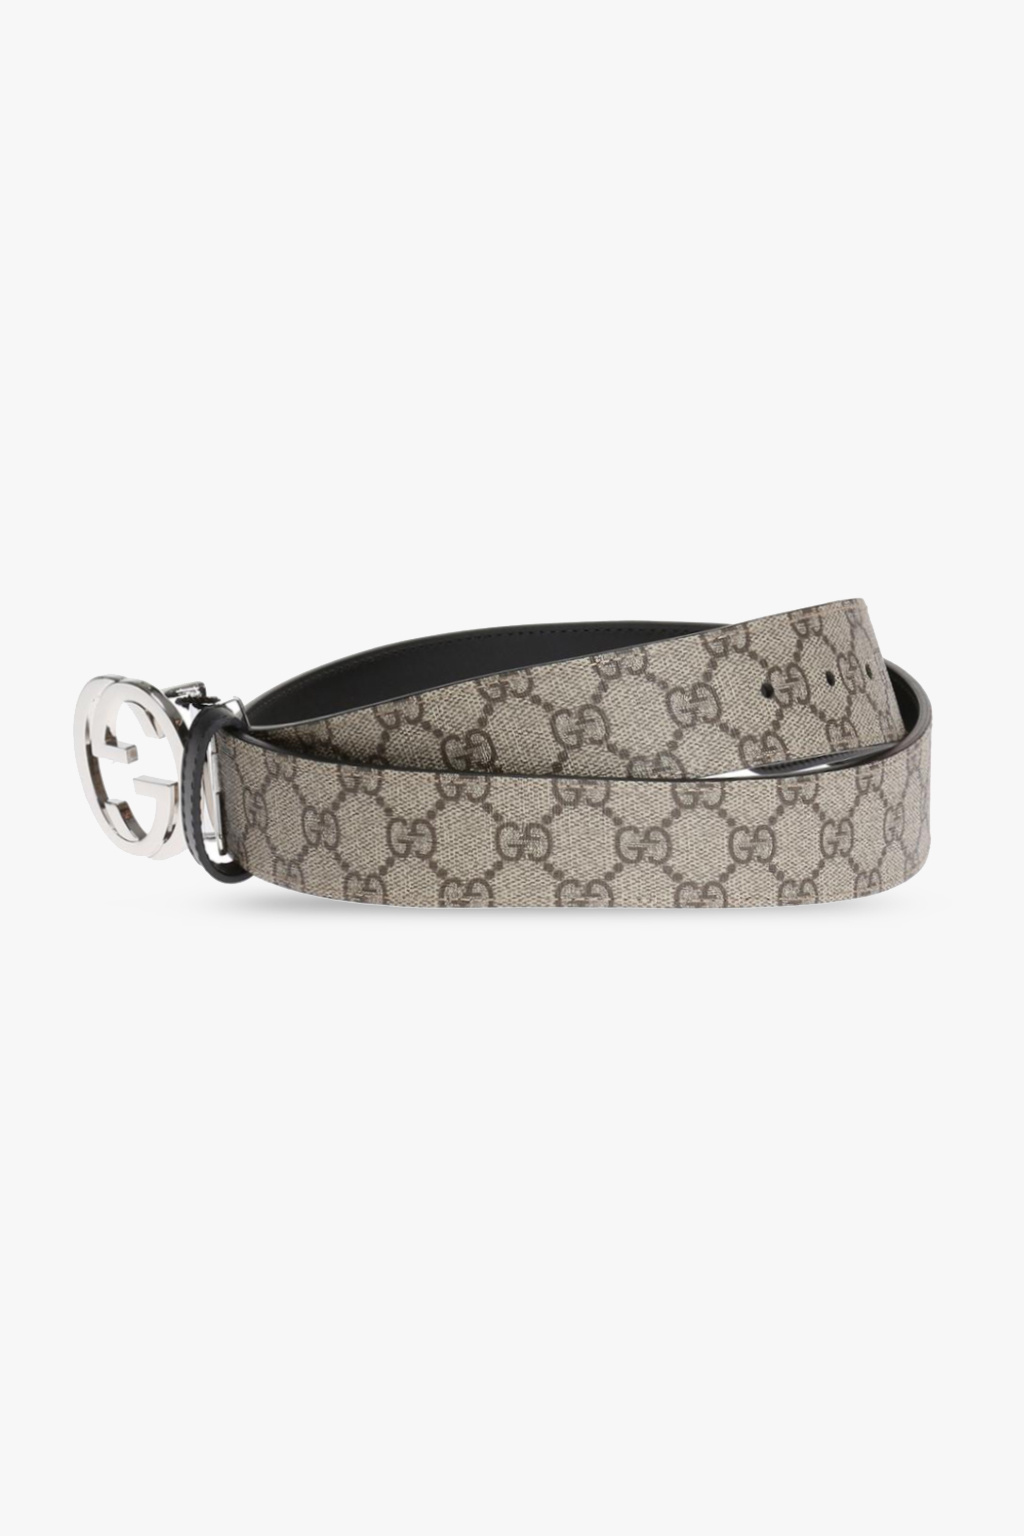 Gucci Gucci GG Marmont Bag